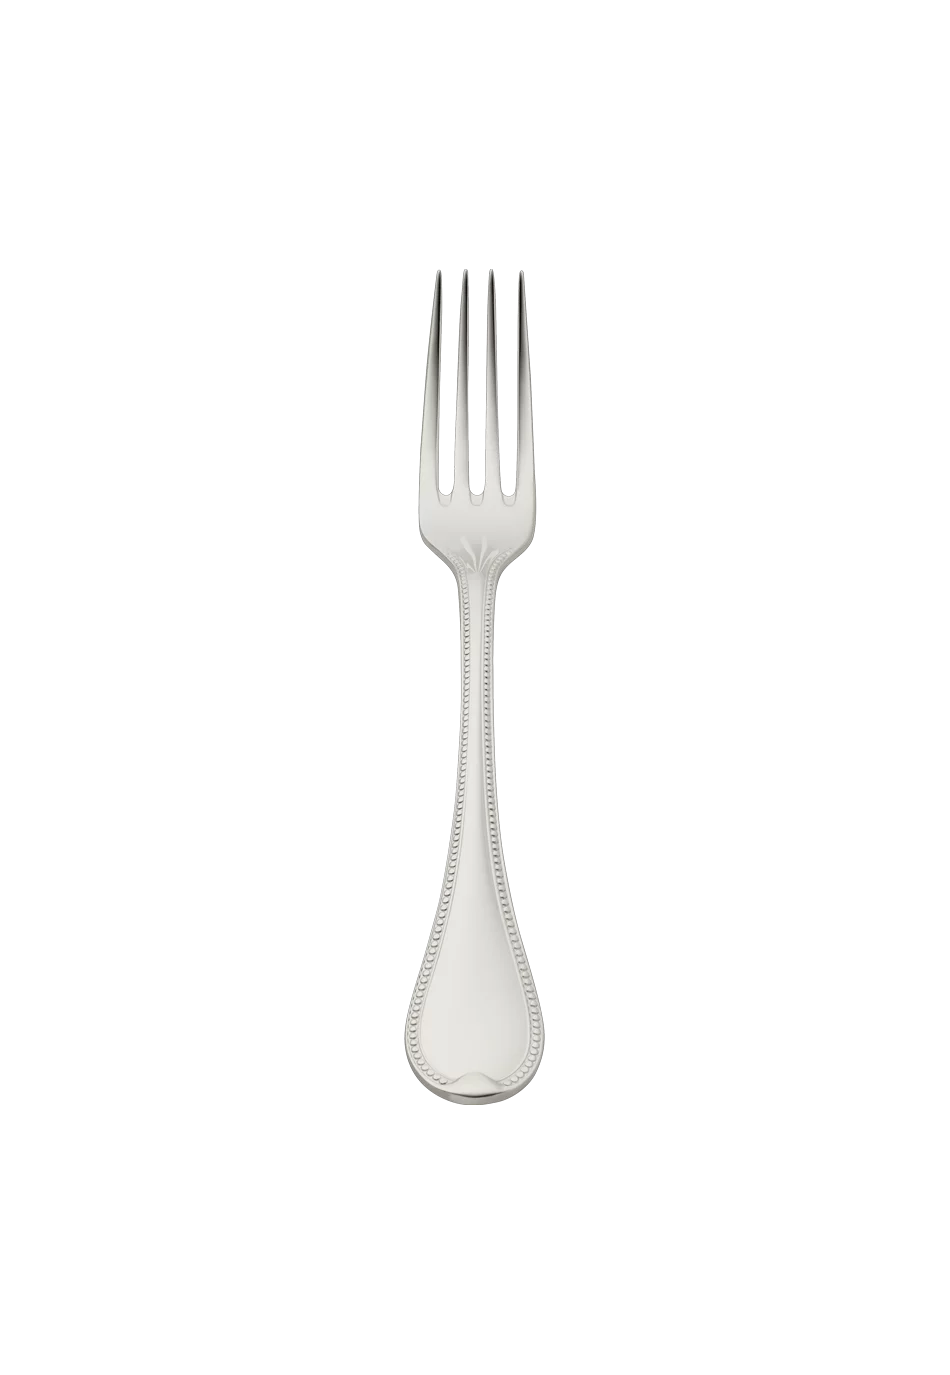 Französisch-Perl Dessert Fork (150g massive silverplated)